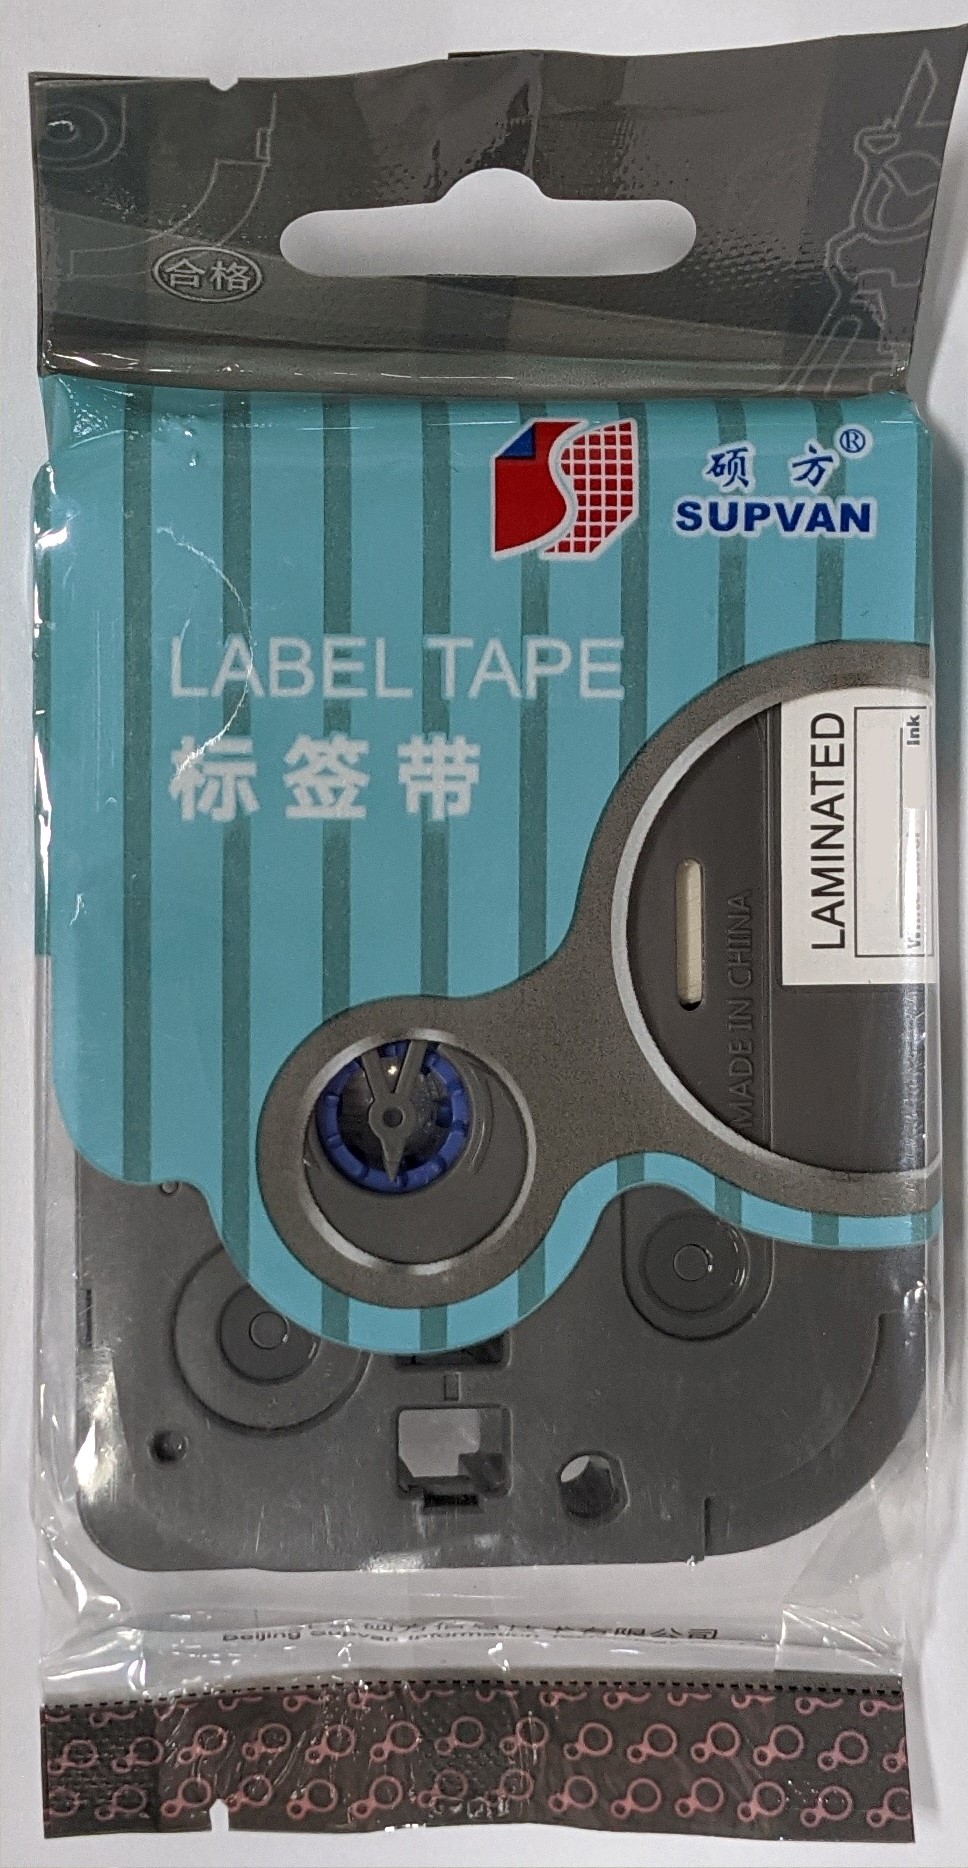 Samolepicí páska Supvan L-A221E, 9mm x 8m, černý tisk / bílý podklad, nelaminovaná